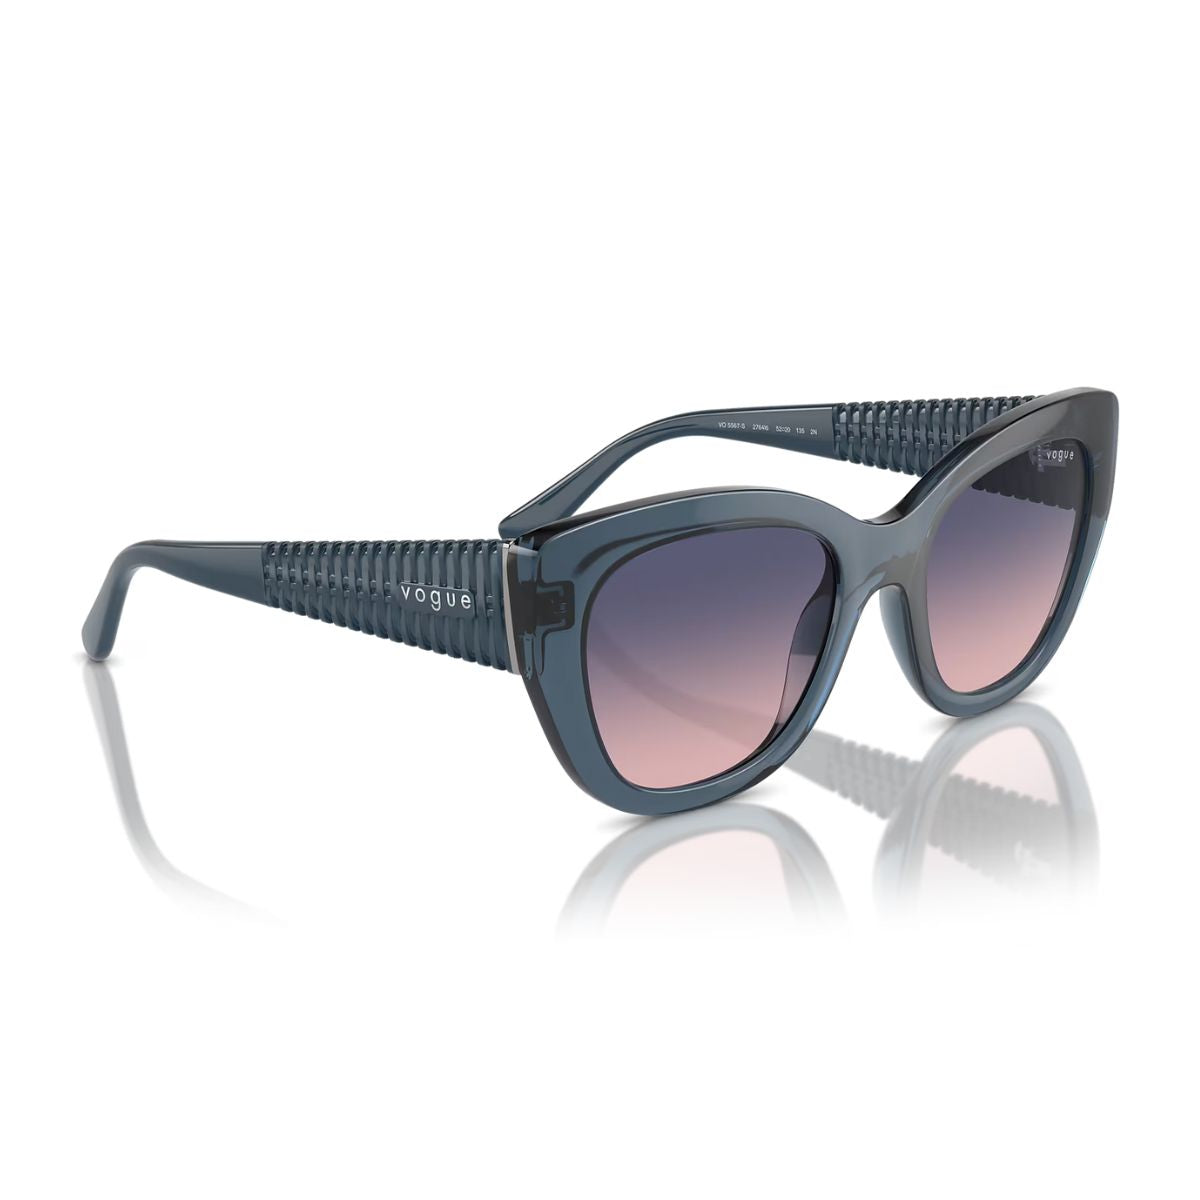 "Shop Stylish Vogue Blue Color Sunglasses For Women's At Online | Optorium"